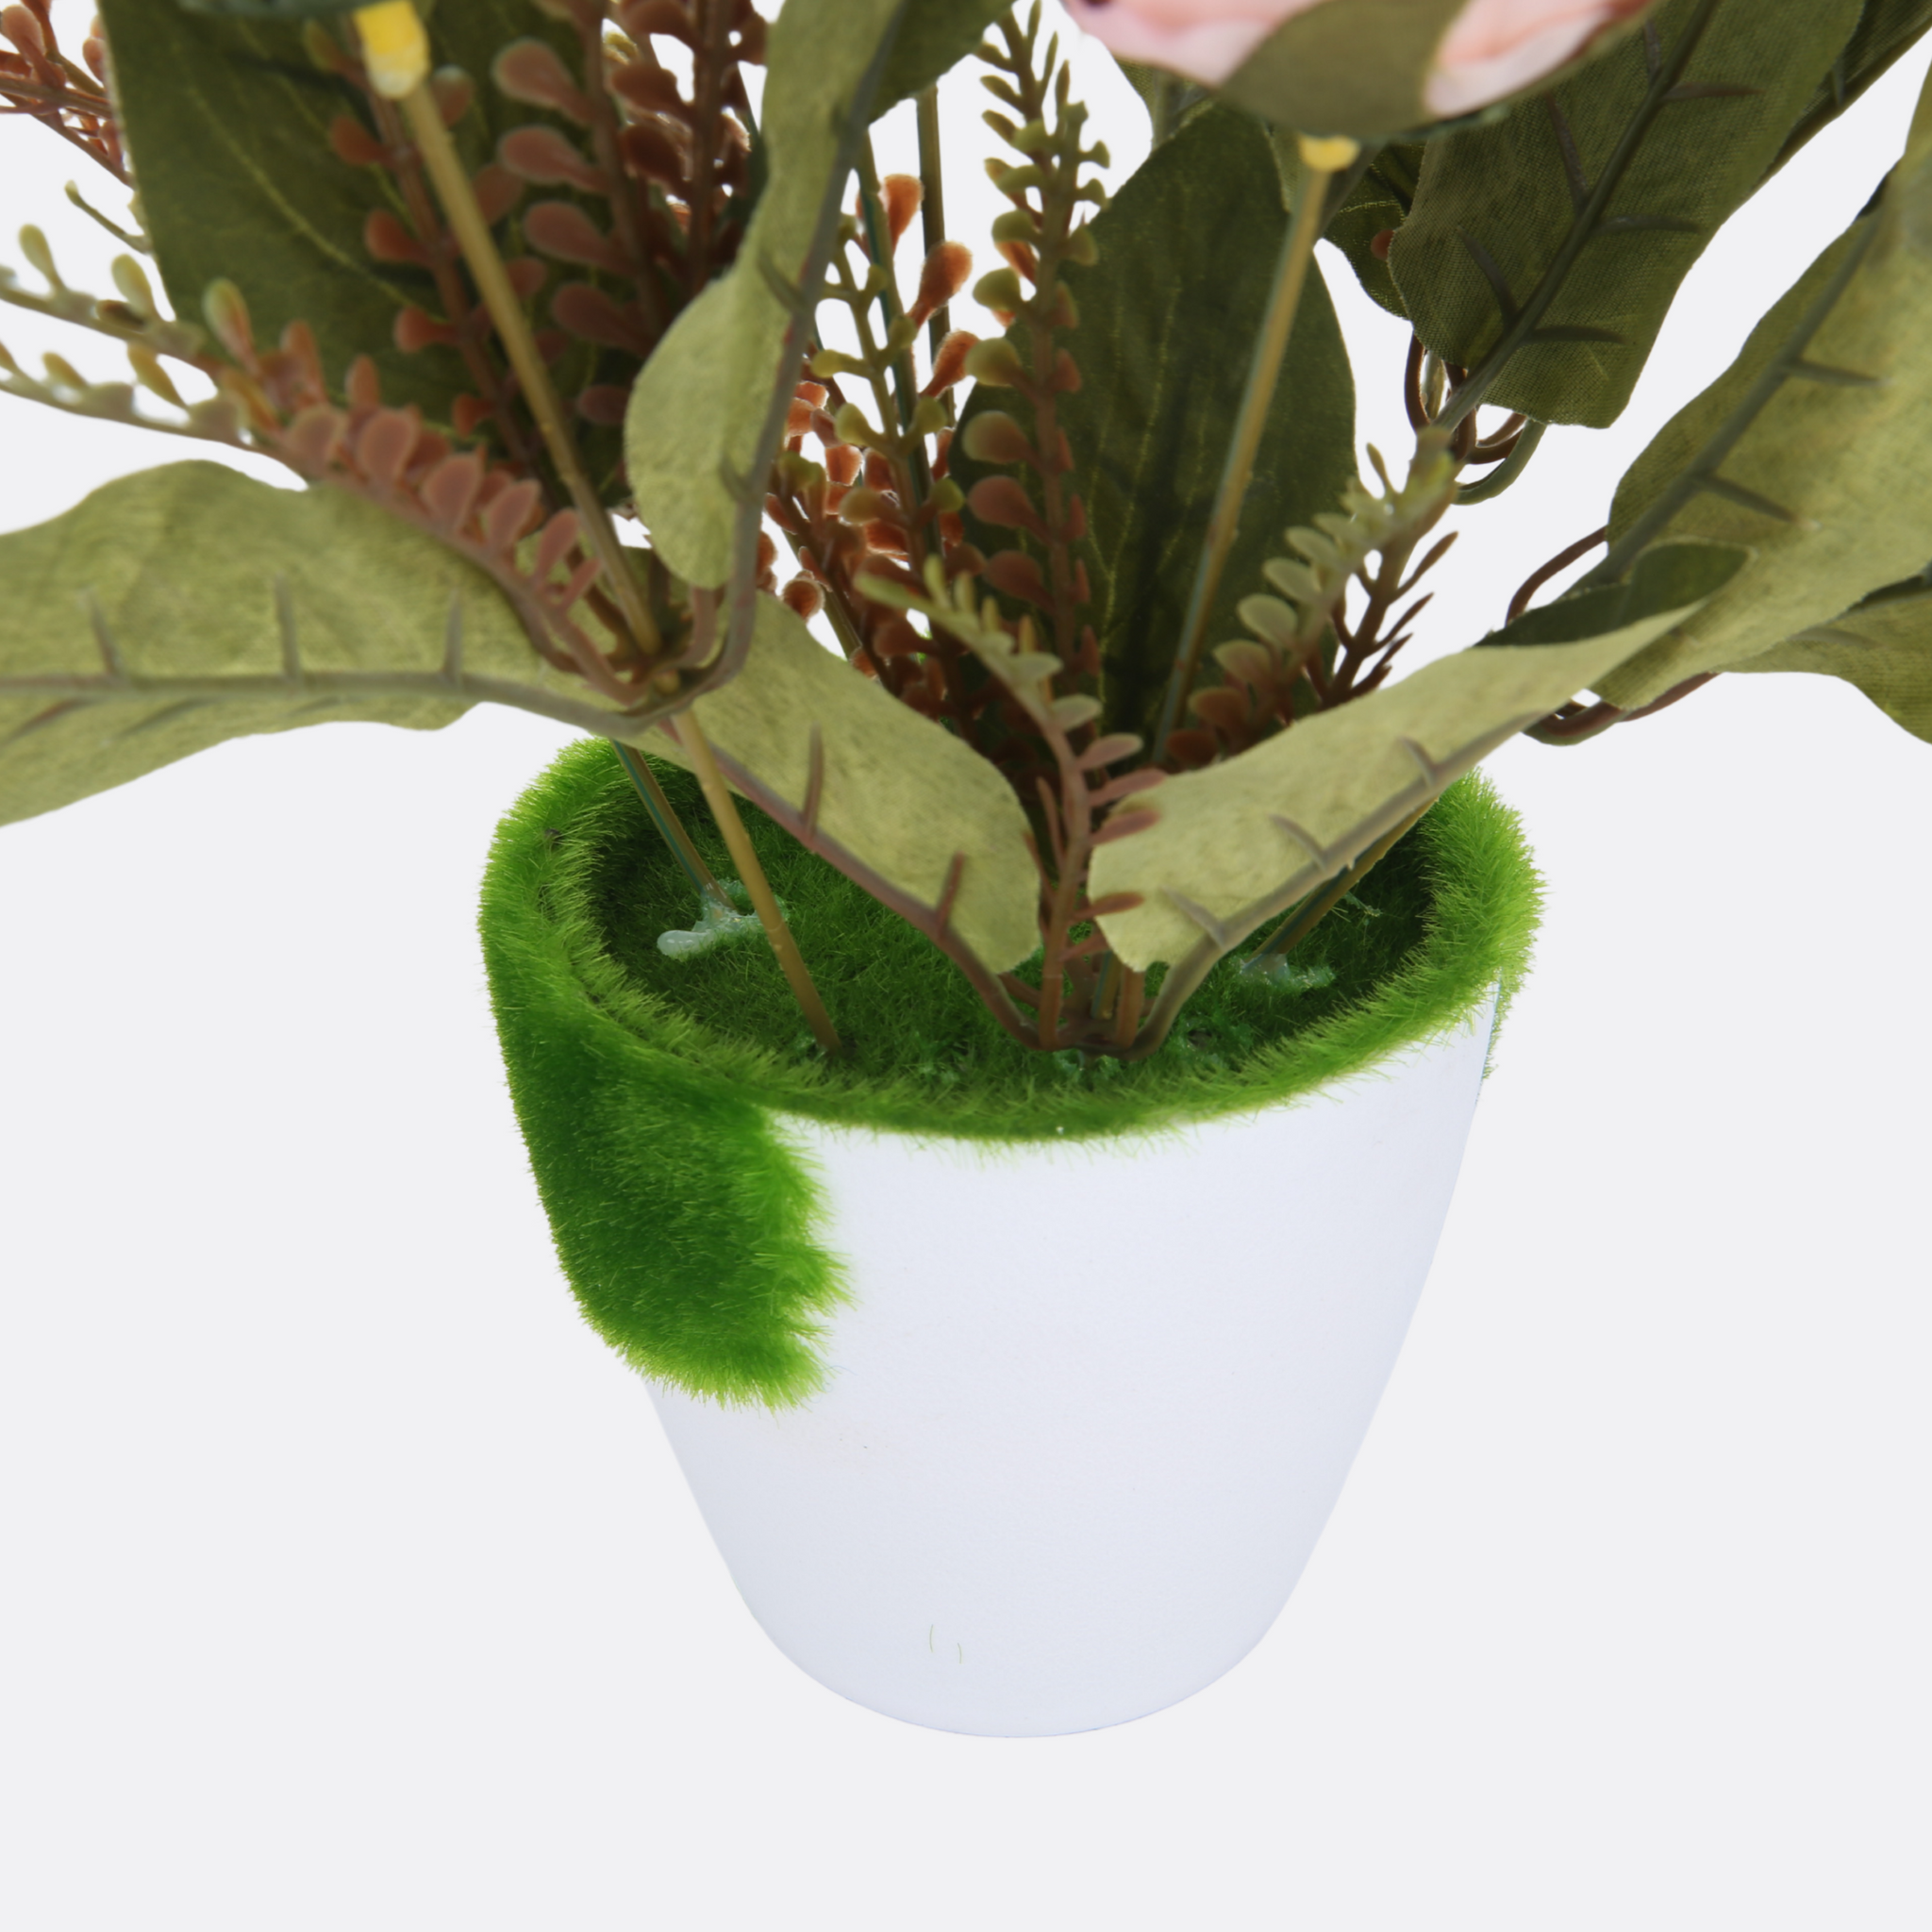 Blushing Plant Arrangement With Ductile Pot